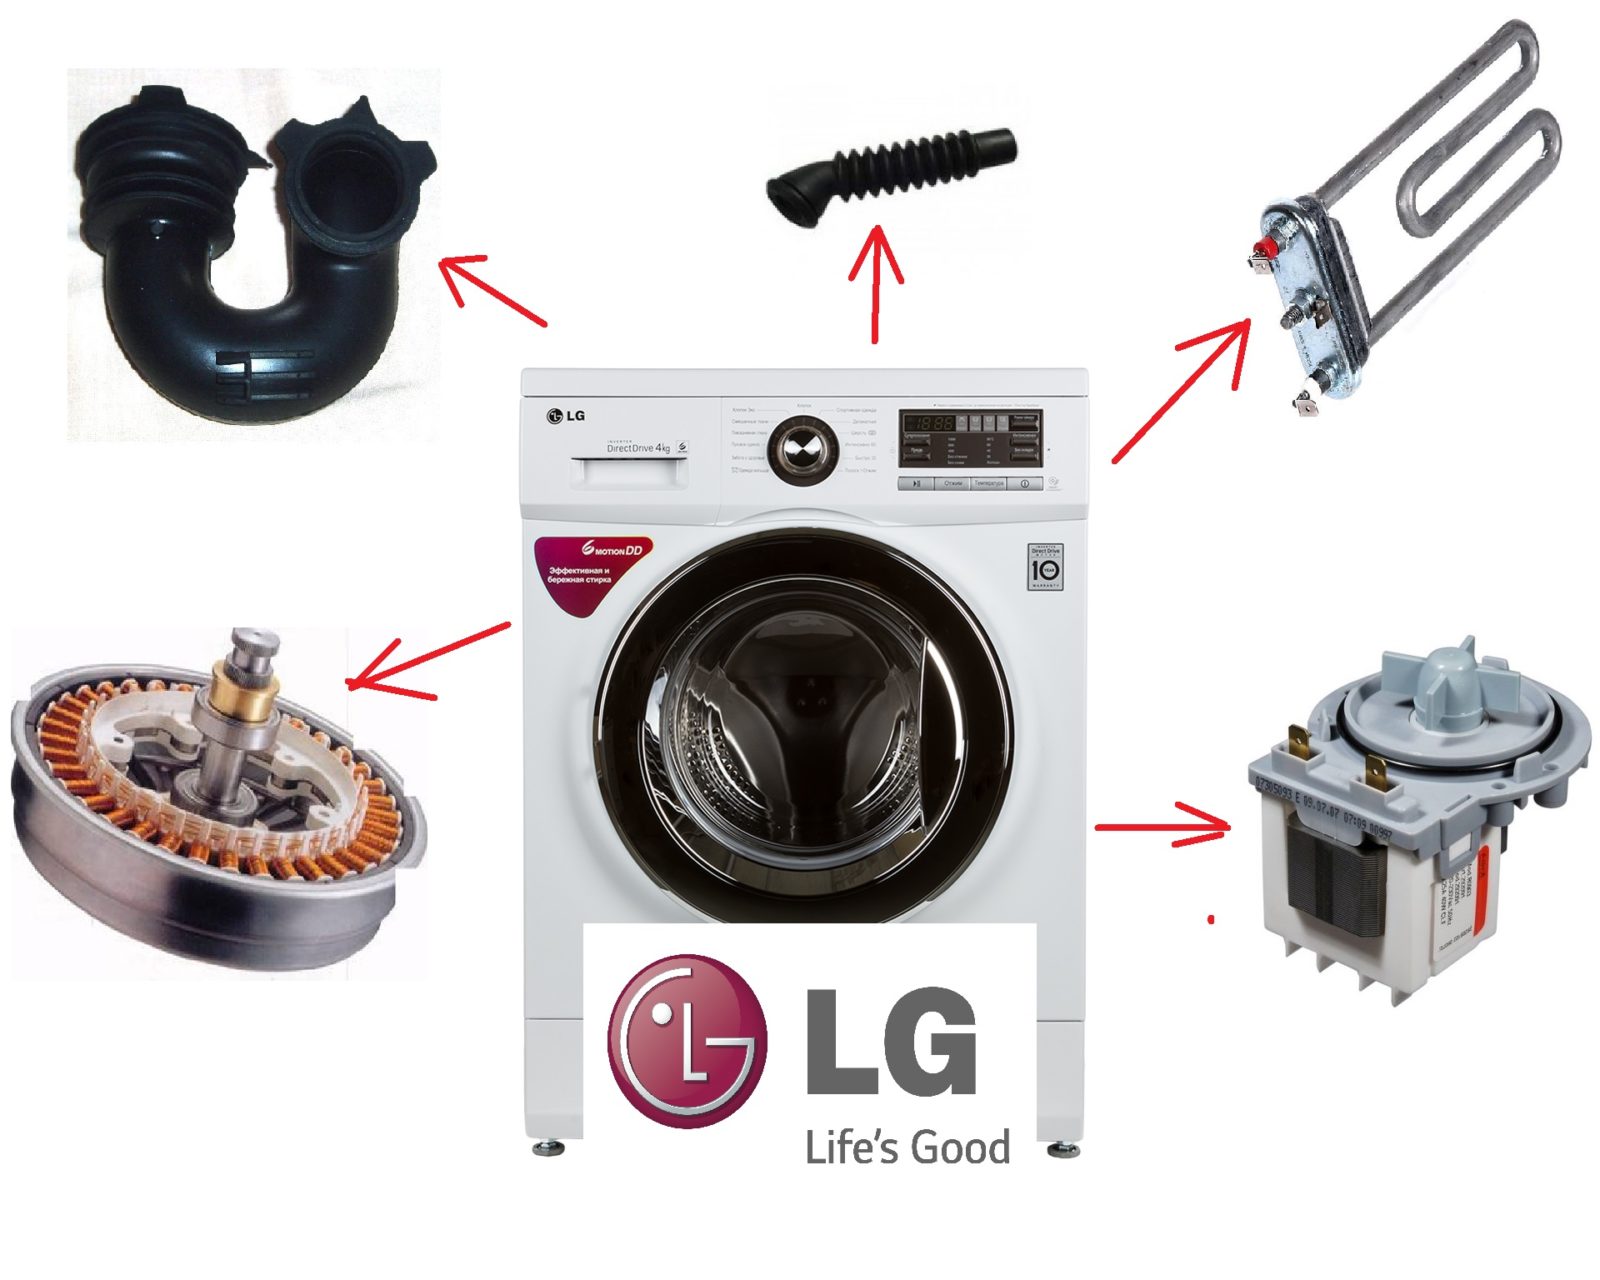 פירוק DIY של מכונת הכביסה של LG